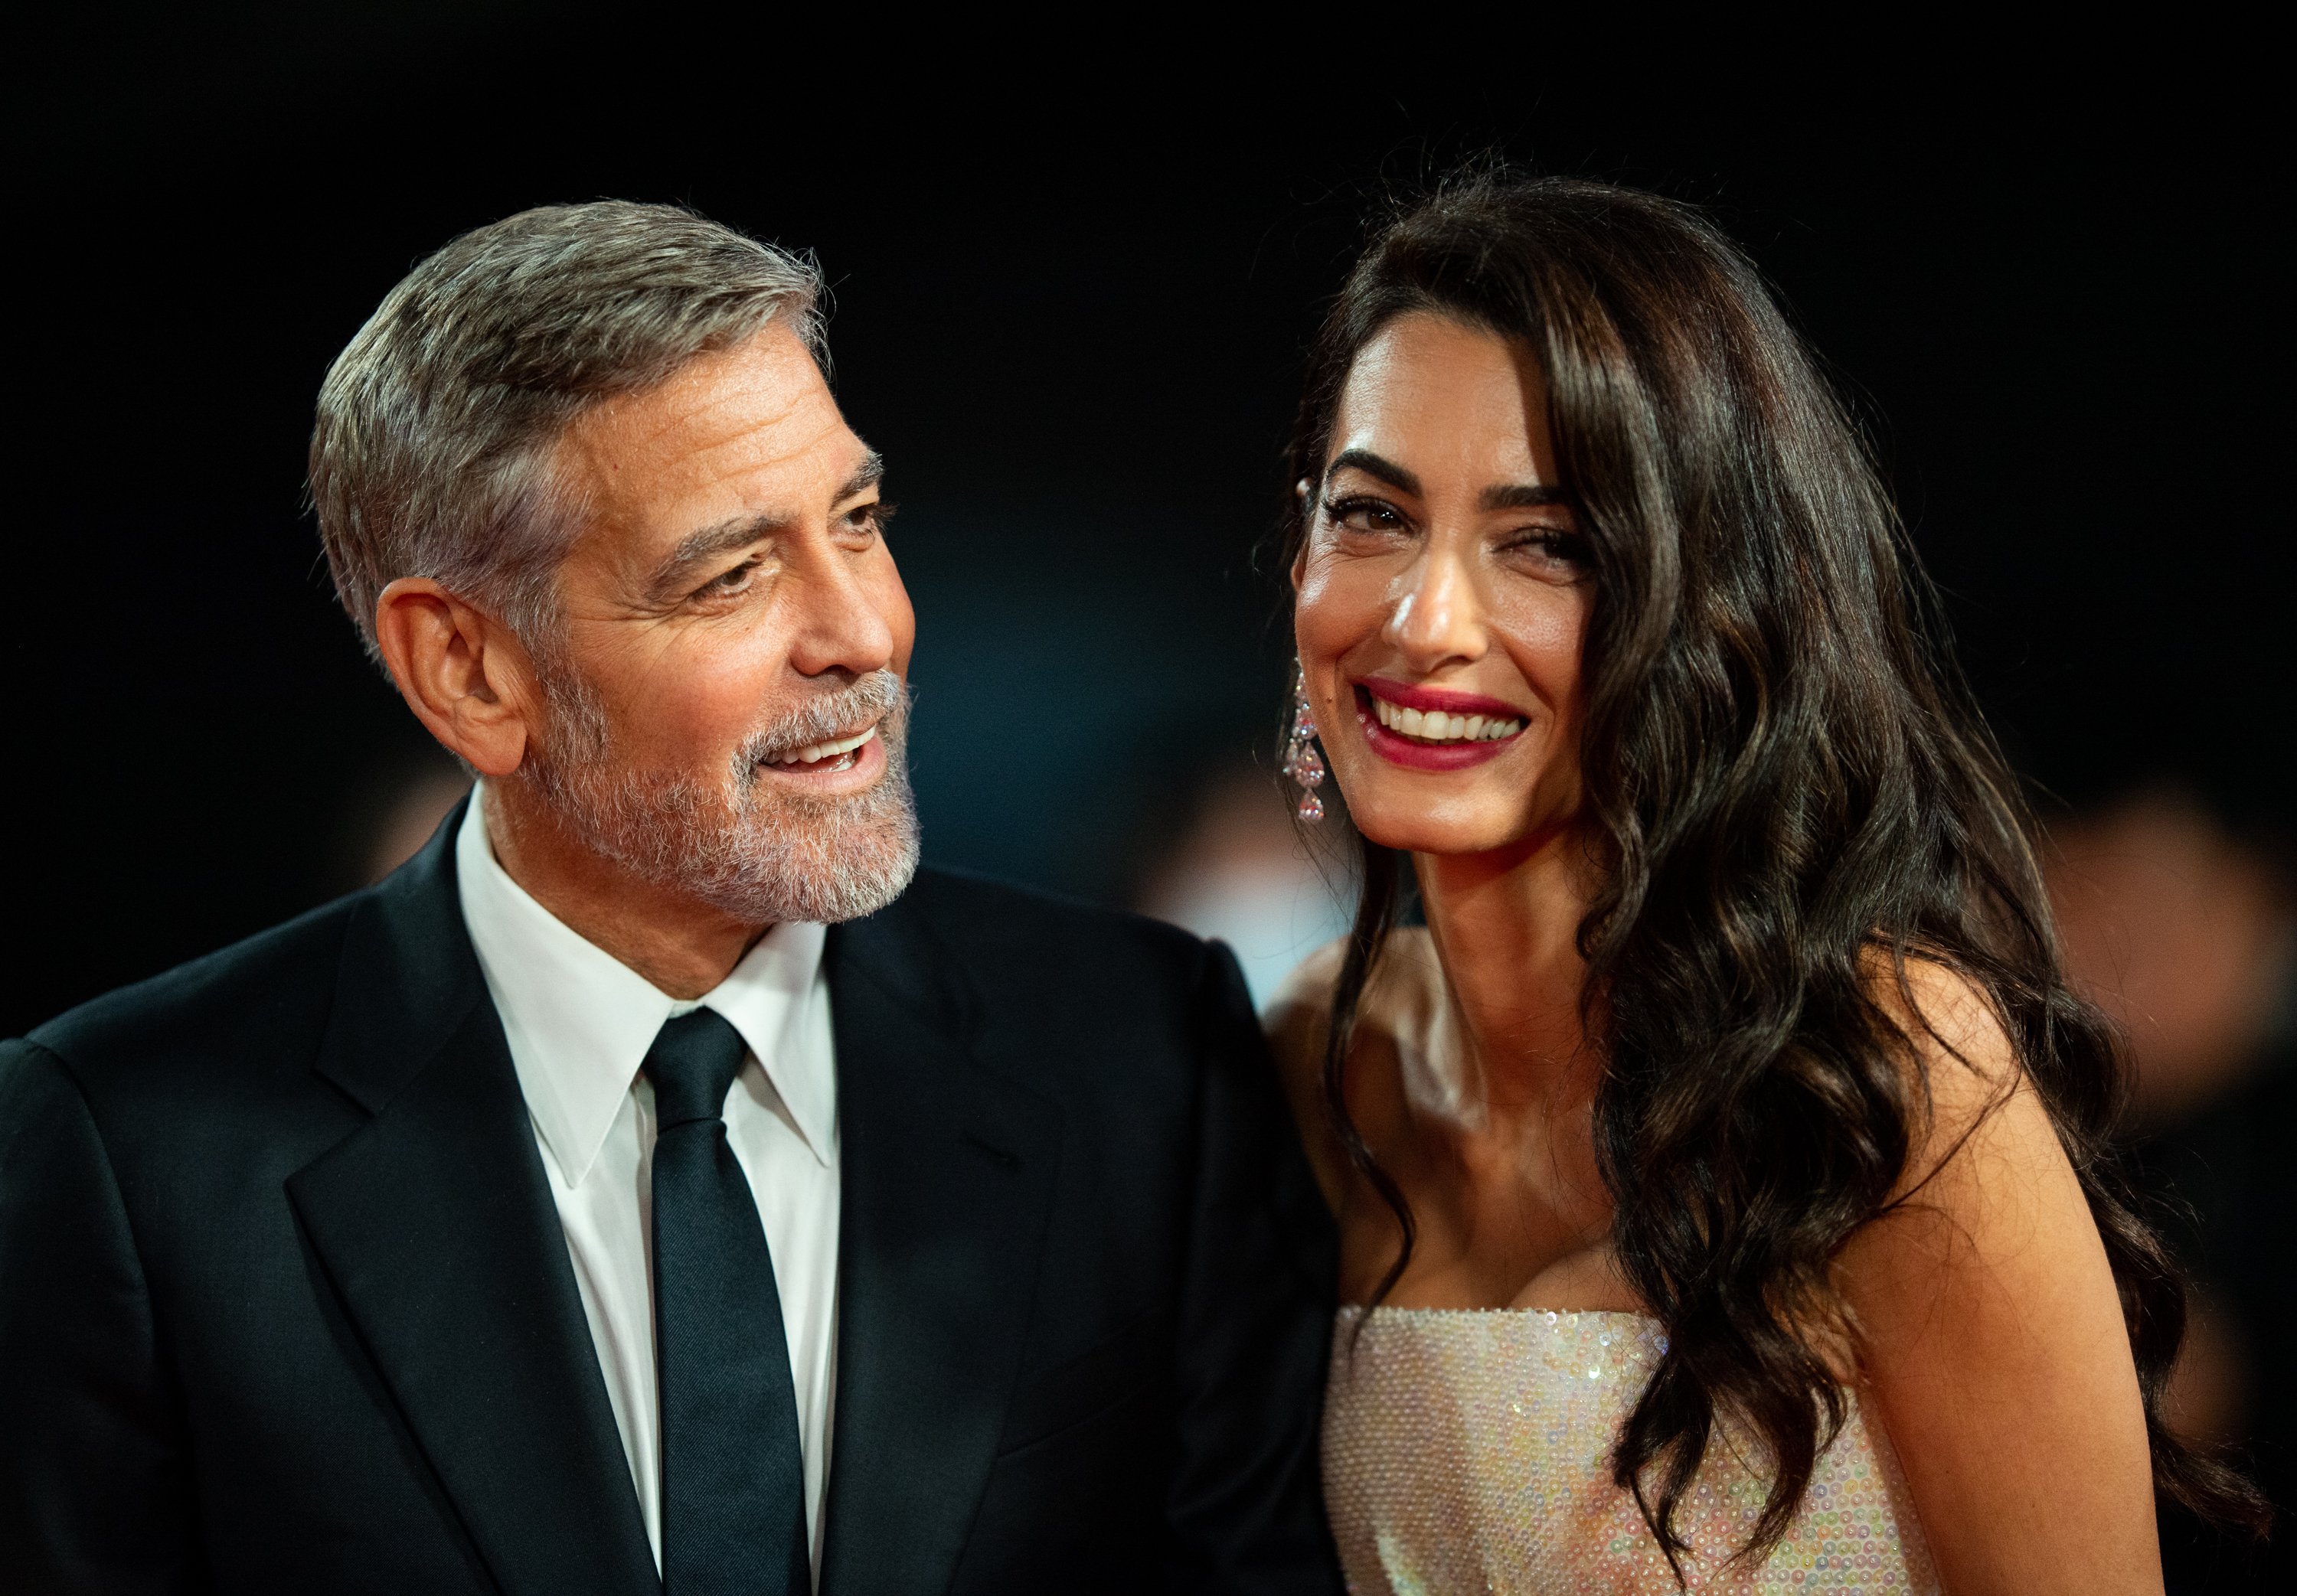 George Clooney y Amal Clooney en el estreno de "The Tender Bar" durante la 65ª edición del BFI London Film Festival el 10 de octubre de 2021 en Londres, Inglaterra. | Foto: Getty Images